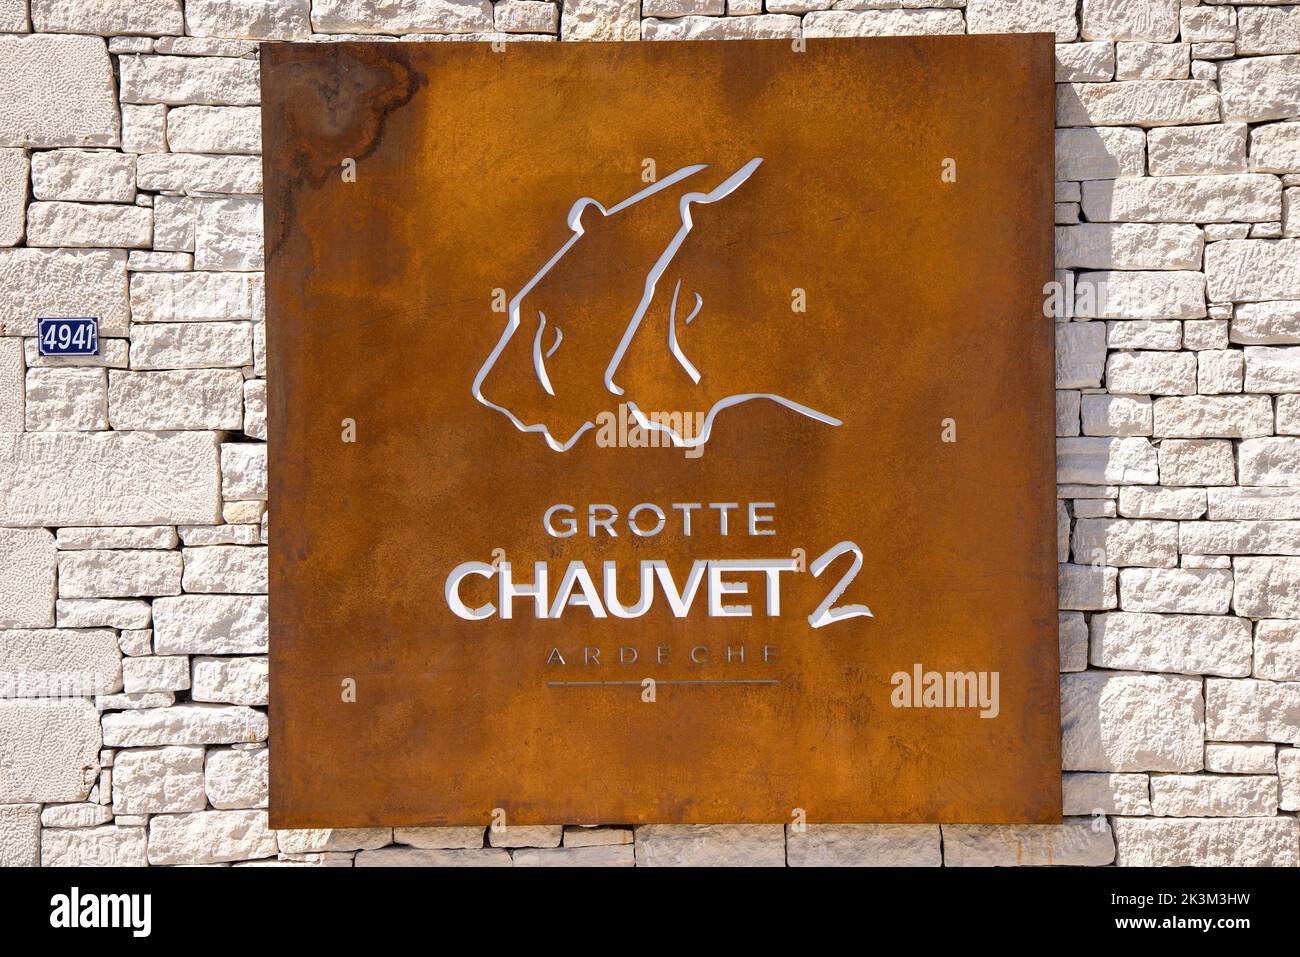 Il segno di metallo all'ingresso della grotta Chauvet 2, la replica della grotta d'arte paleolitica in Ardeche, Francia Foto Stock